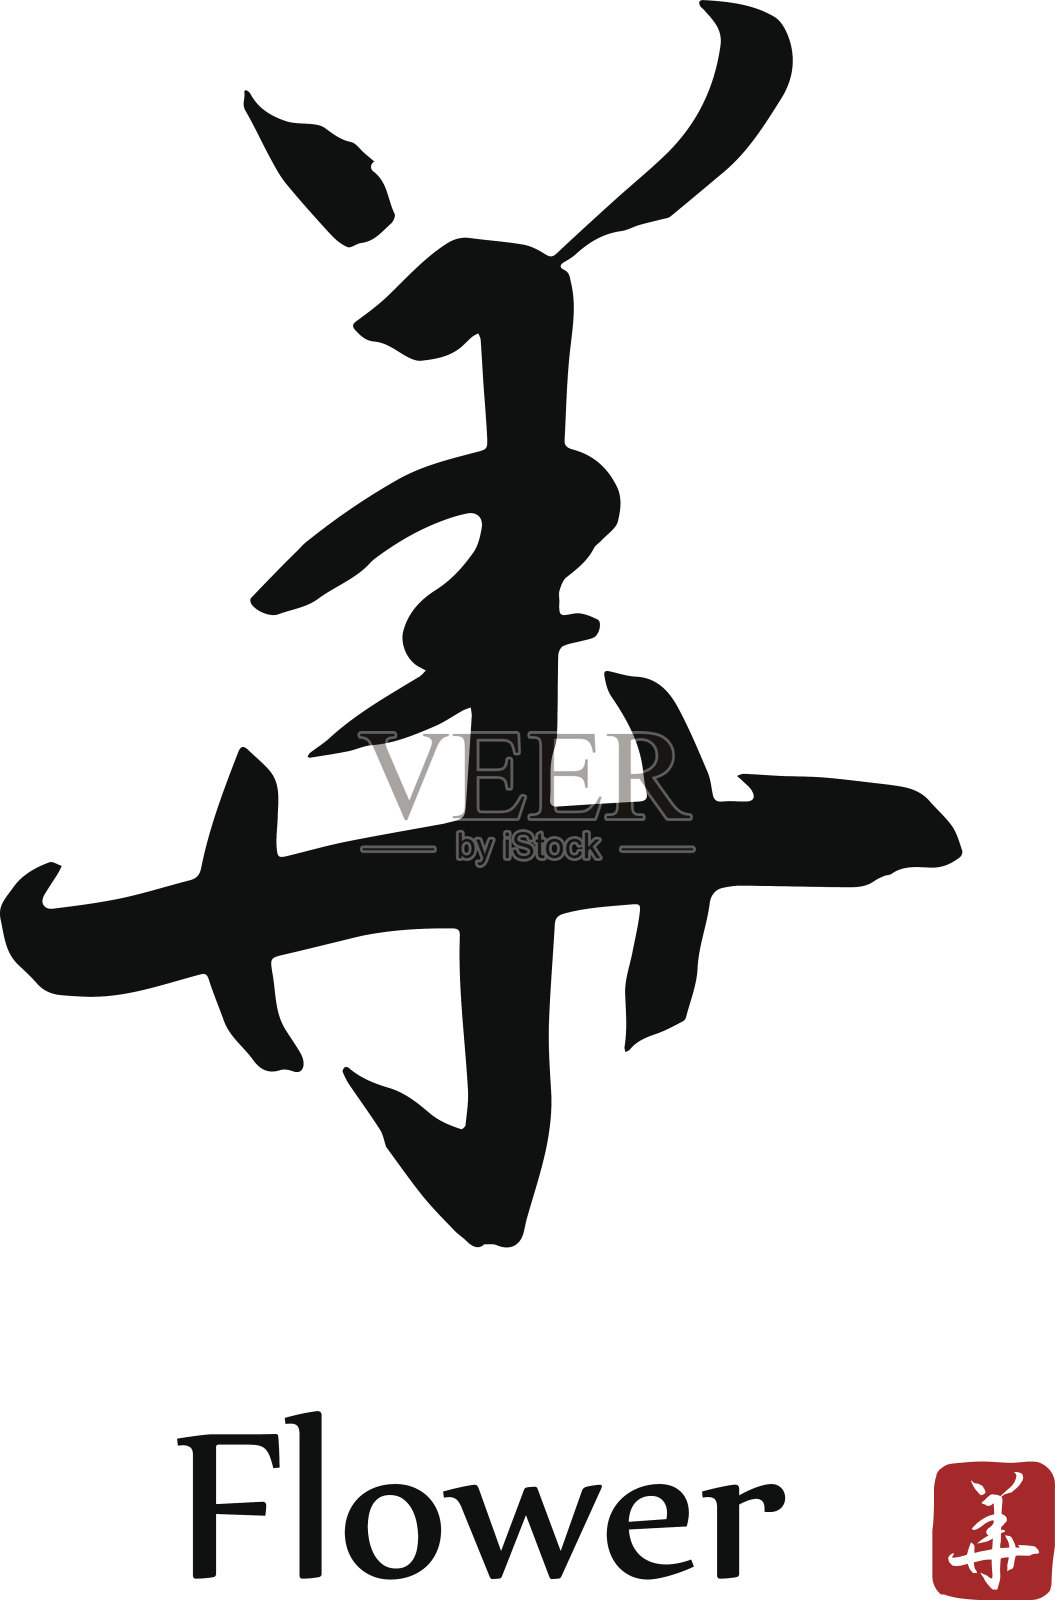 手绘象形文字翻译-花。矢量日本黑色符号在白色背景与文本。墨笔书法与红色邮票设计元素图片